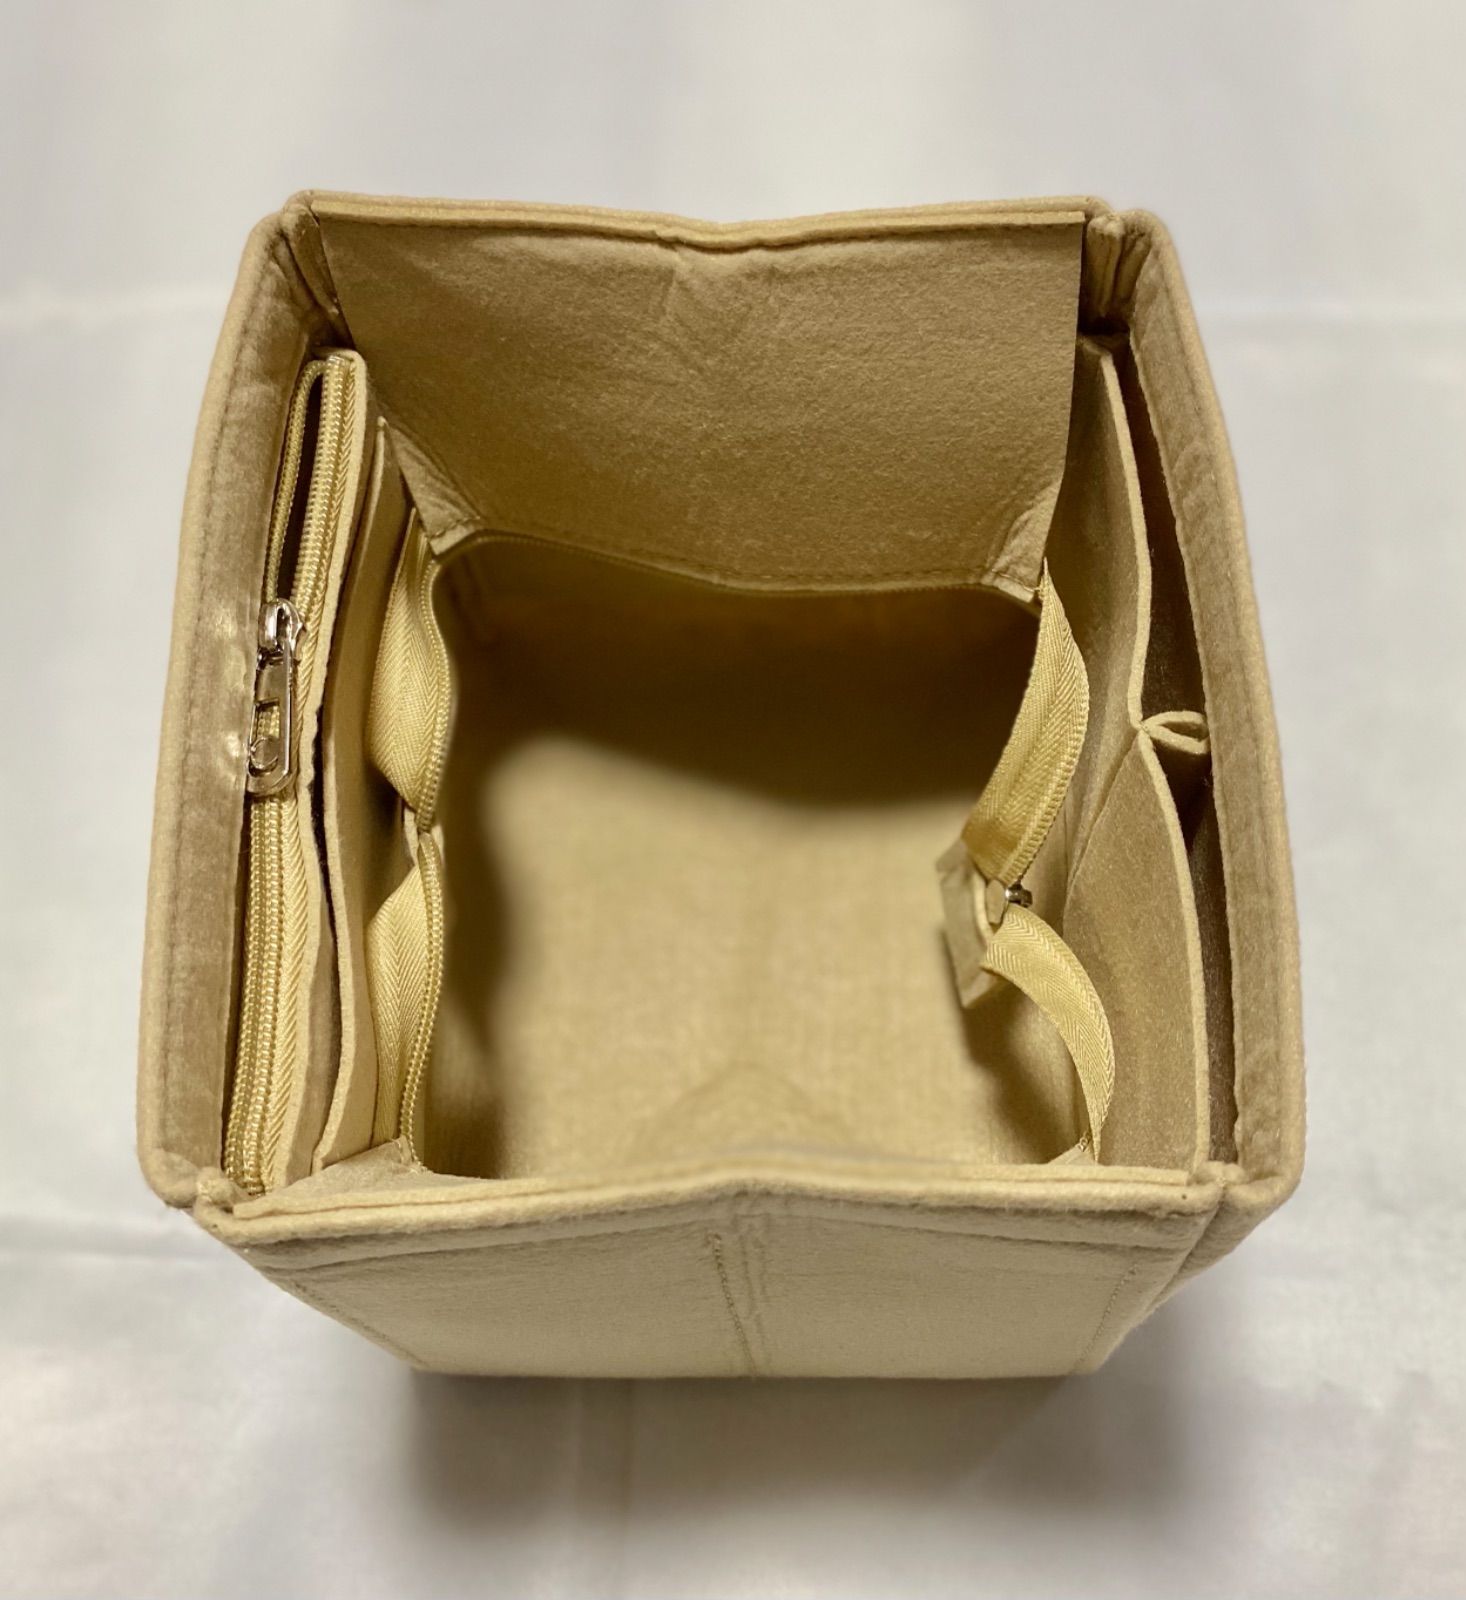 上等な バッグインバッグ ピコタン18PM対応 自立 軽い 専用インナーバッグ